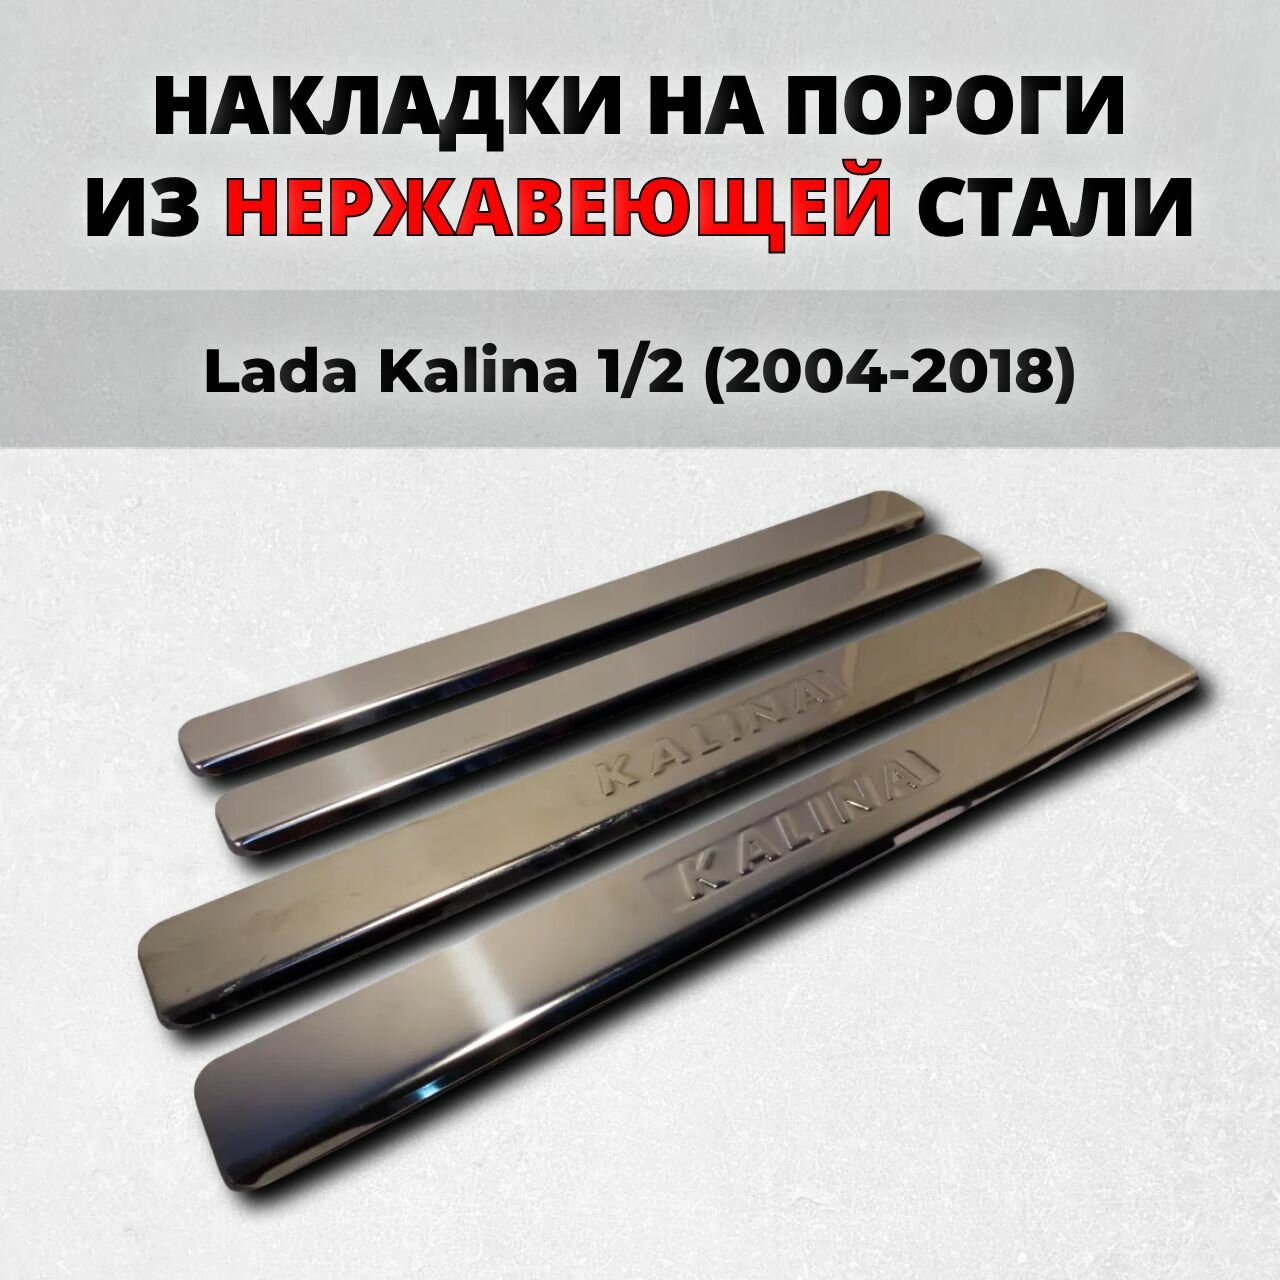 Накладки на пороги Лада Калина 1/2 2004-2018 из нержавеющей стали Lada Kalina